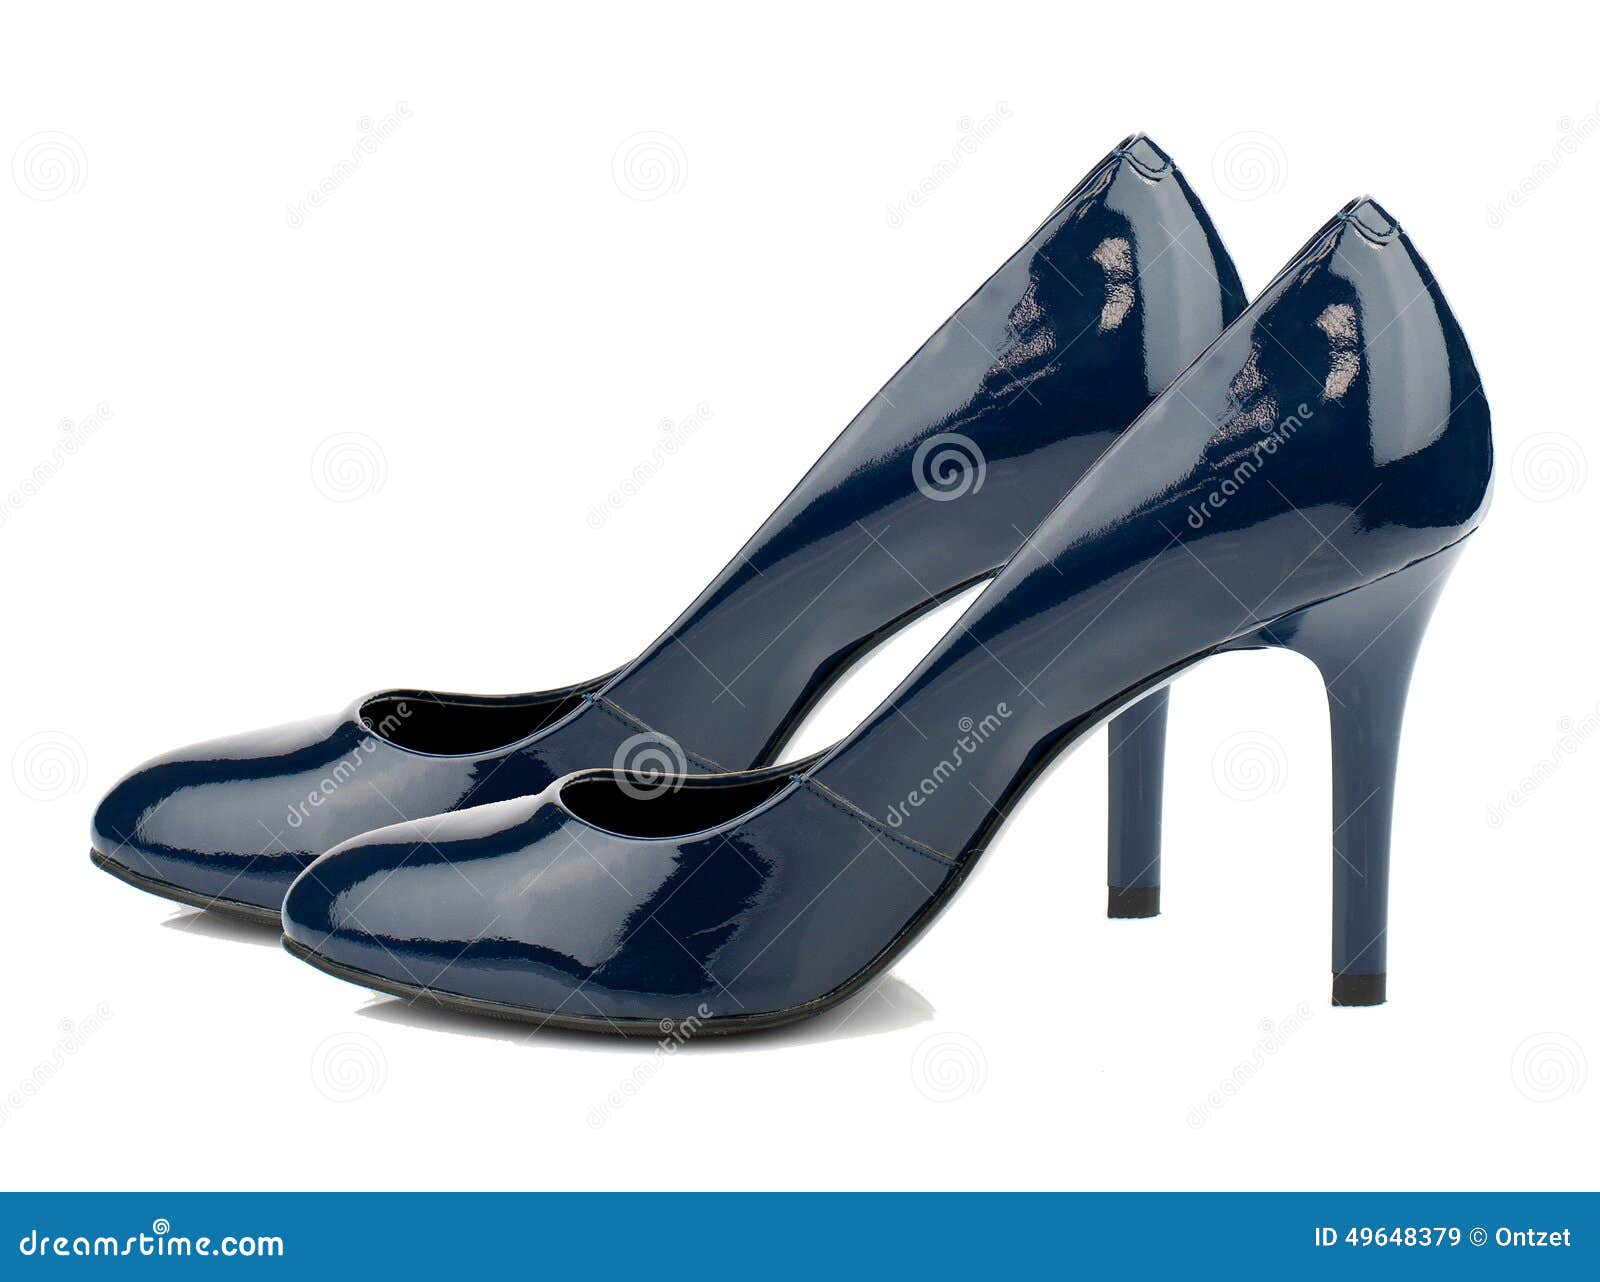 zapatos tacon alto azul marino